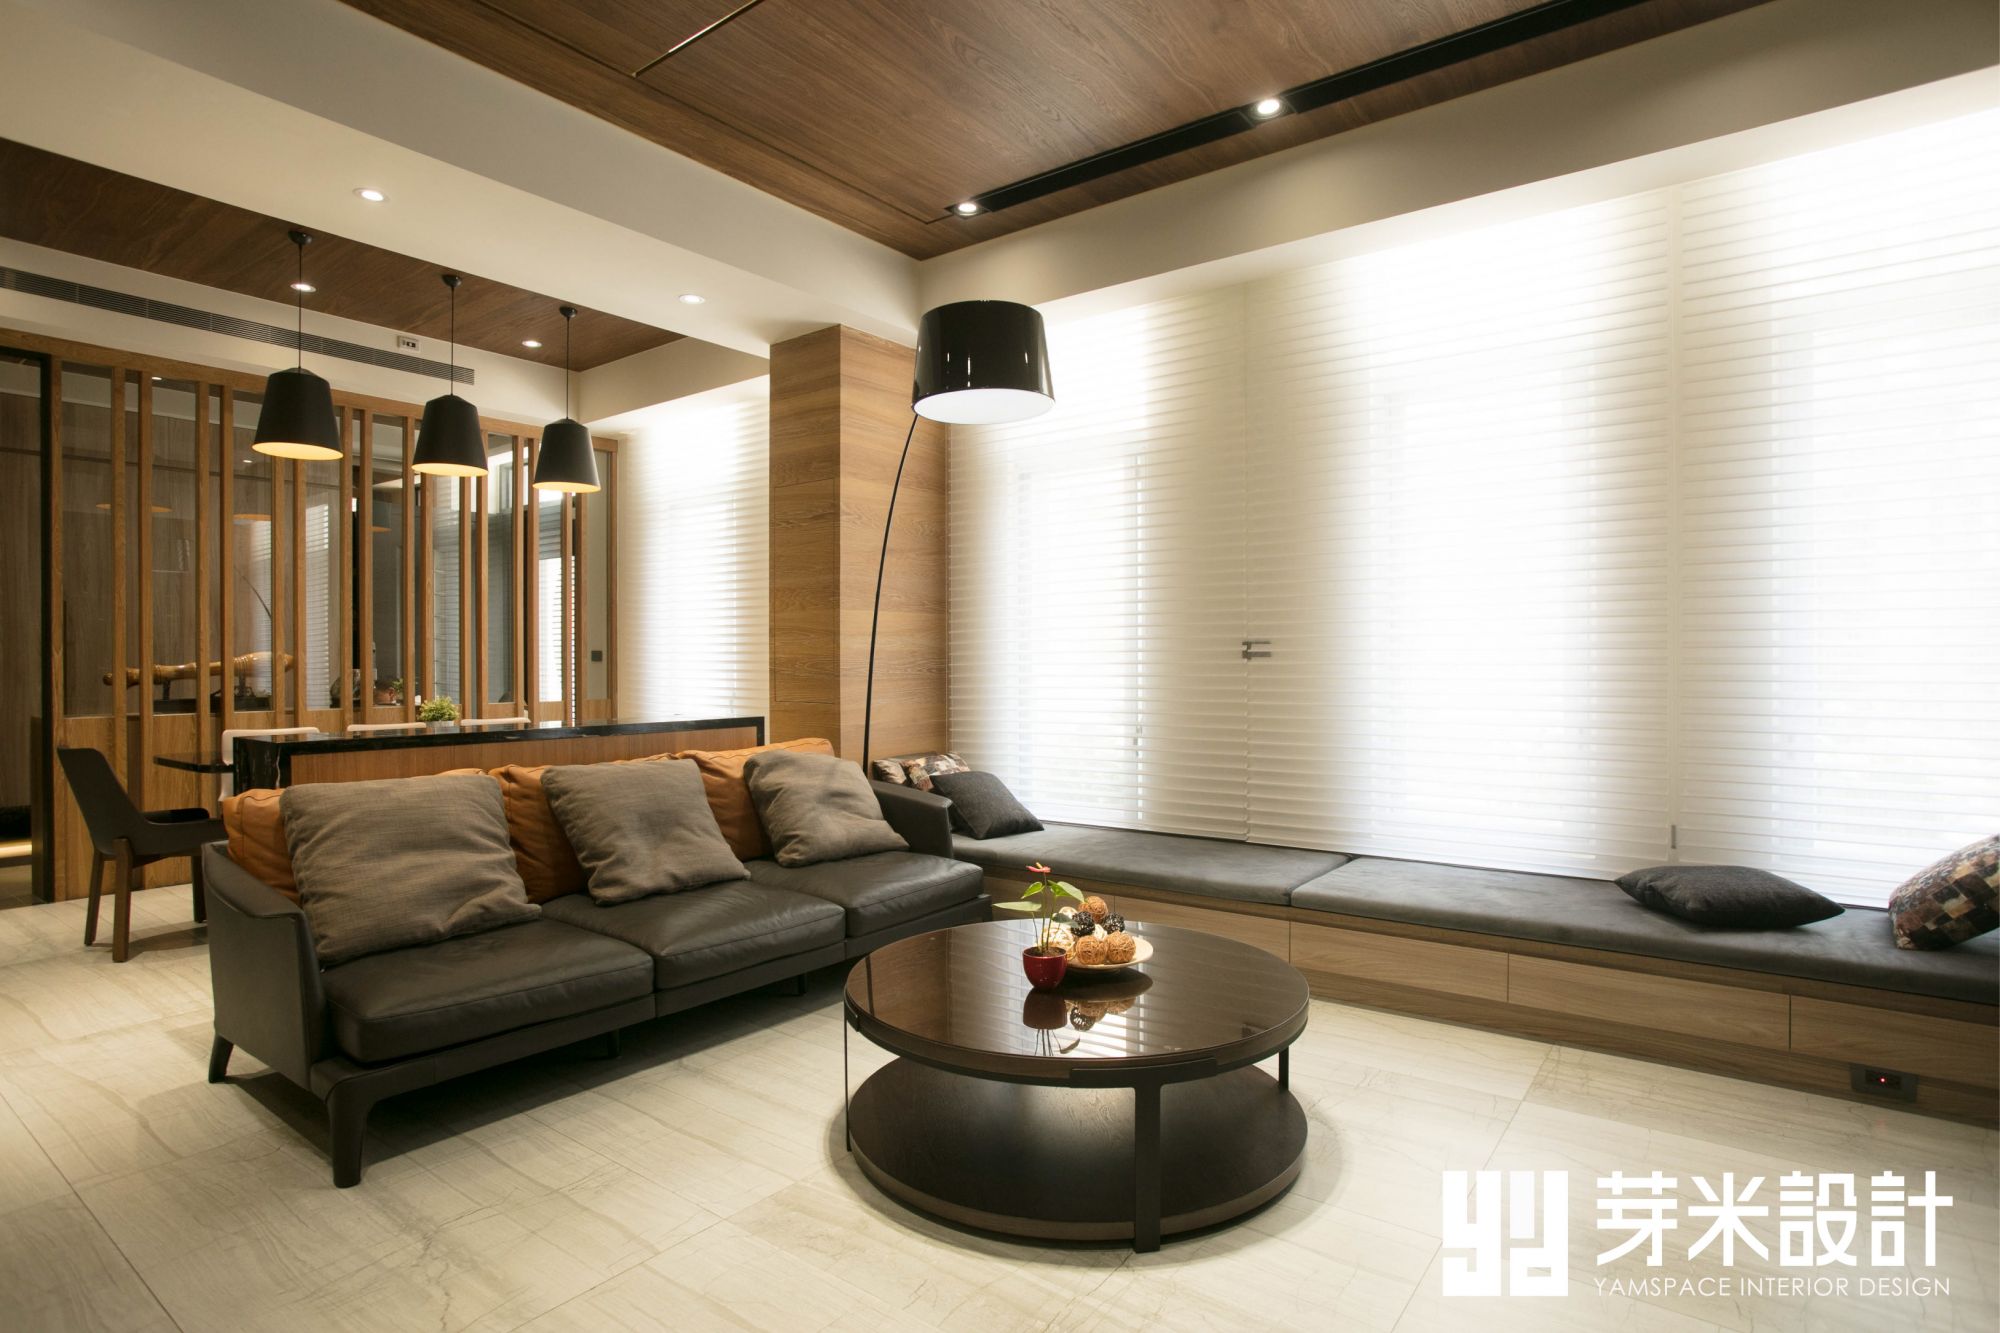 面貼淺色磁磚使客廳有放大效果-台中室內設計公司